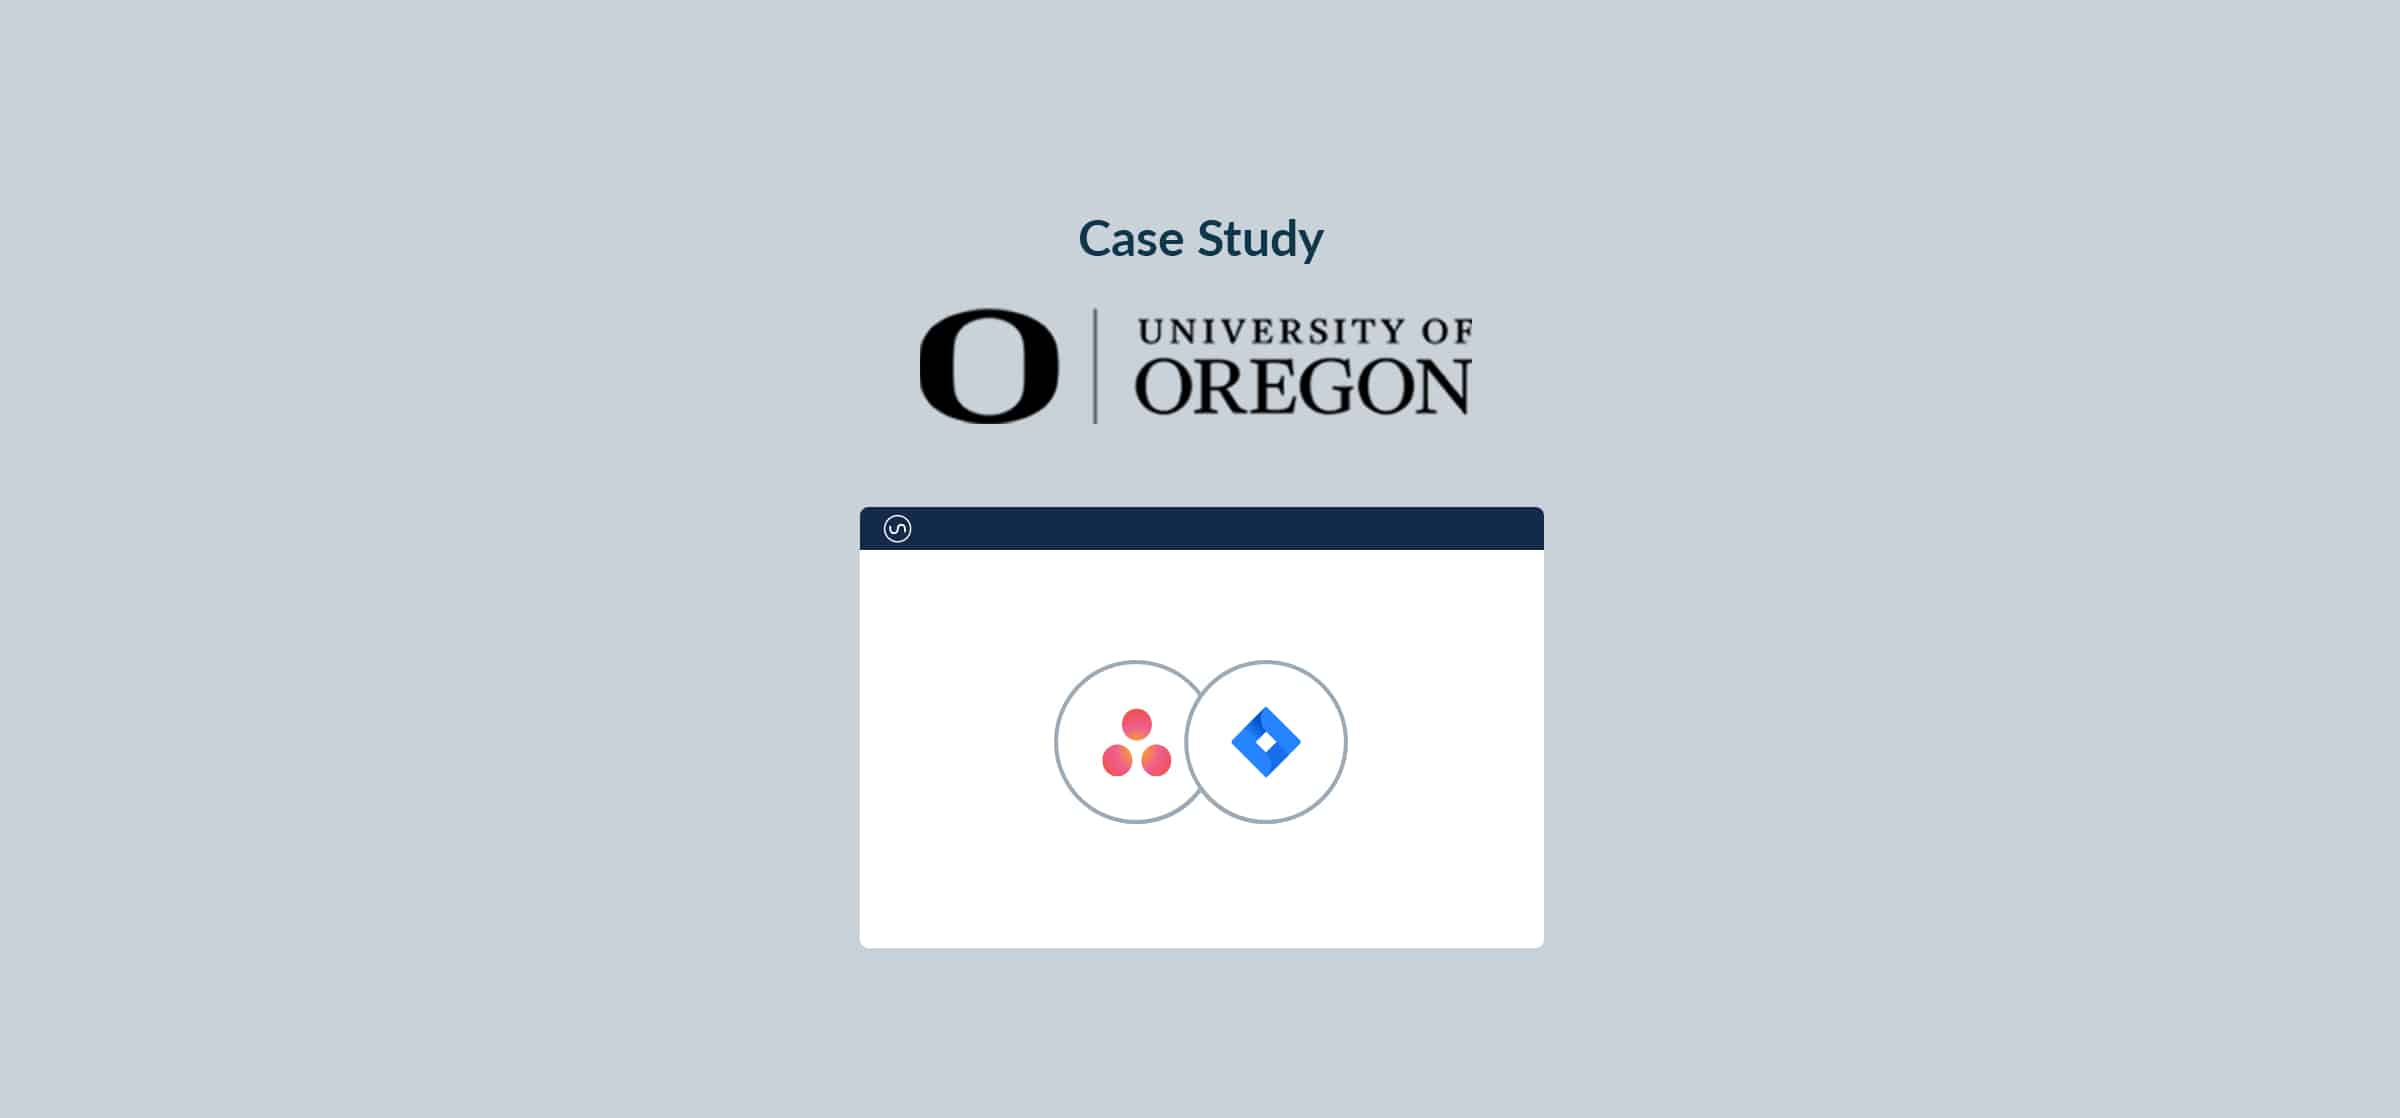 University of Oregon case study